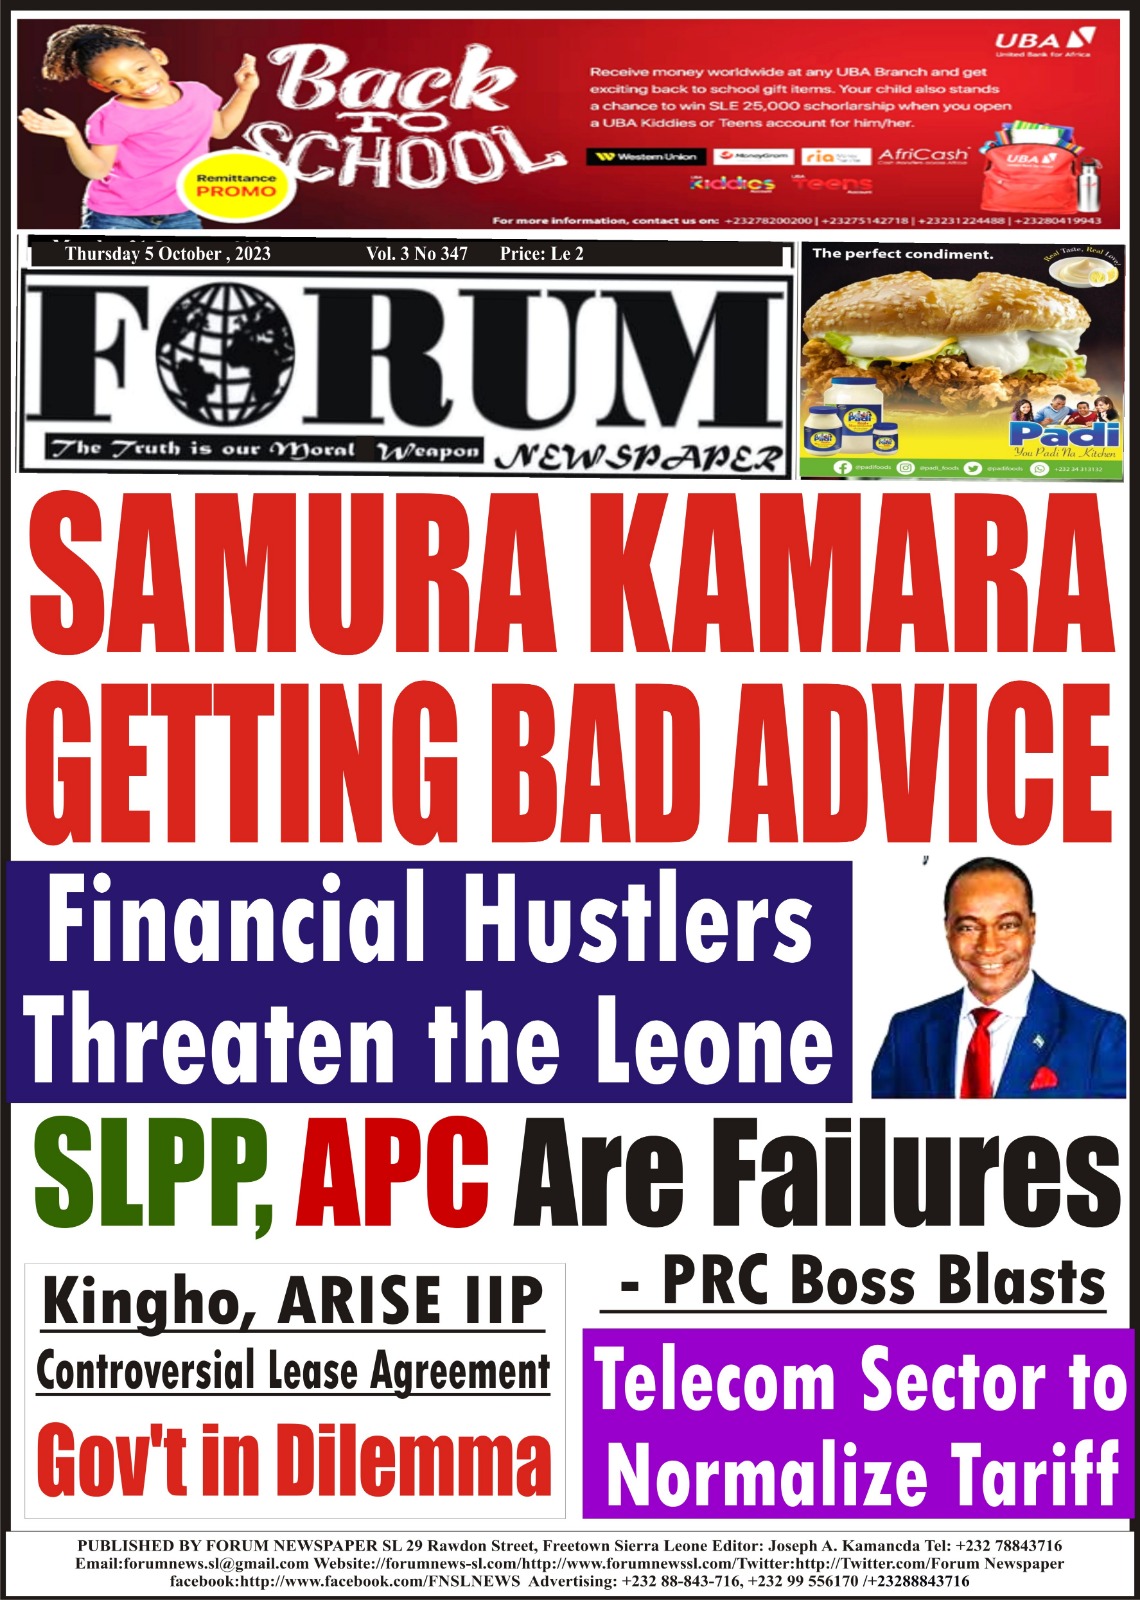 SAMURA KAMARA GETTING BAD ADVICE